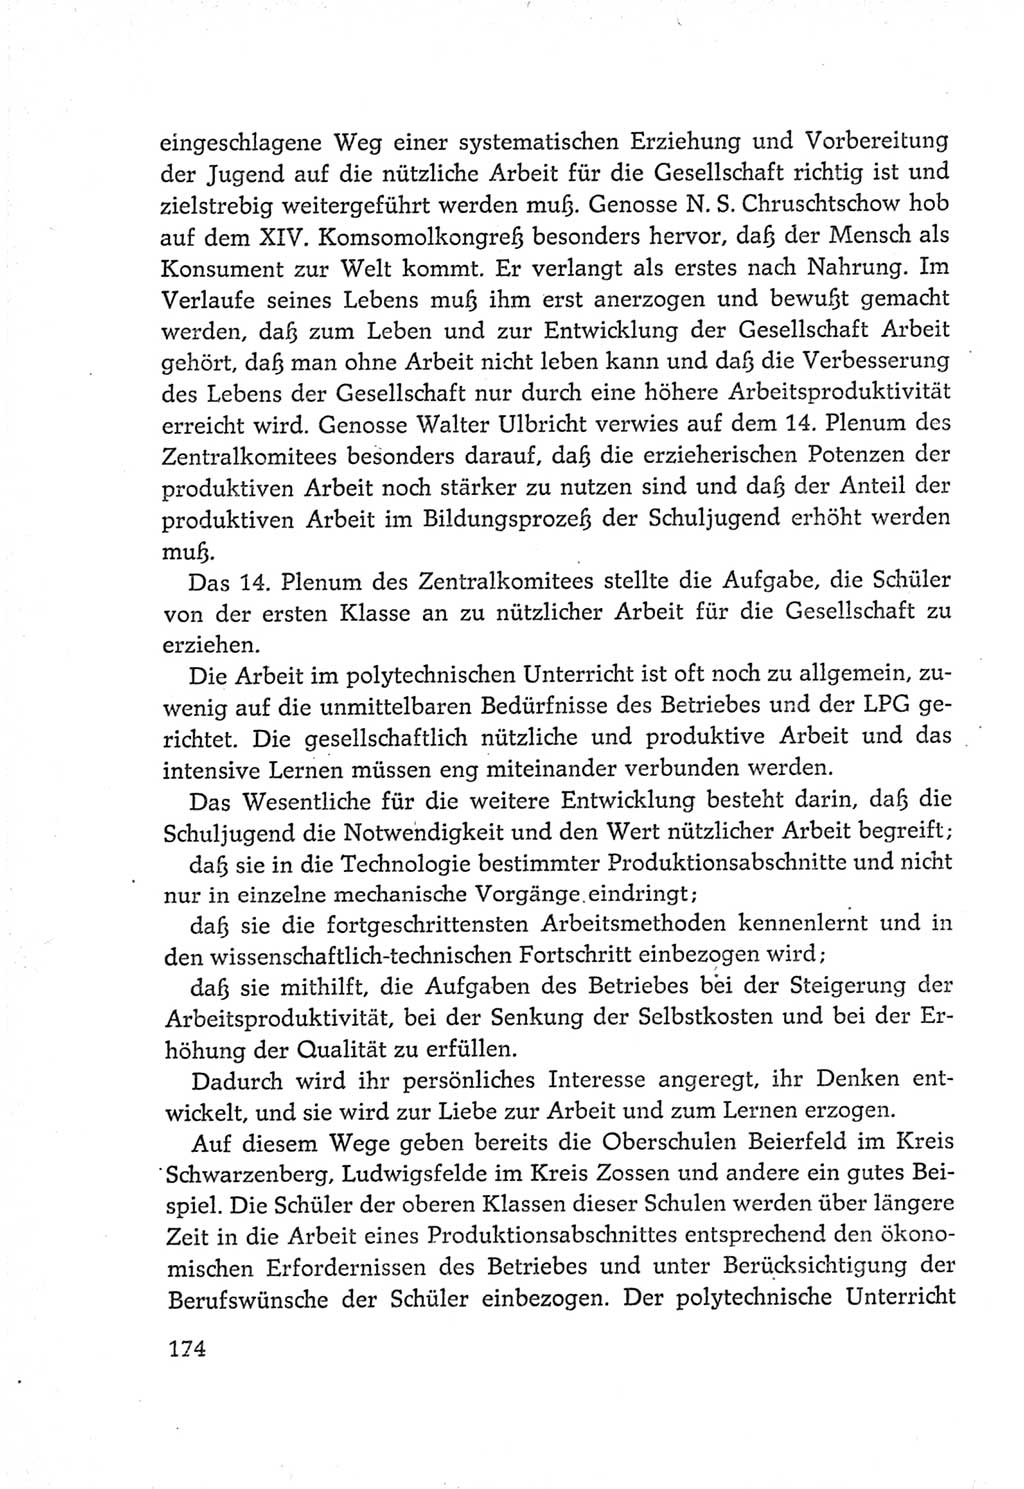 Protokoll der Verhandlungen des Ⅵ. Parteitages der Sozialistischen Einheitspartei Deutschlands (SED) [Deutsche Demokratische Republik (DDR)] 1963, Band Ⅳ, Seite 174 (Prot. Verh. Ⅵ. PT SED DDR 1963, Bd. Ⅳ, S. 174)